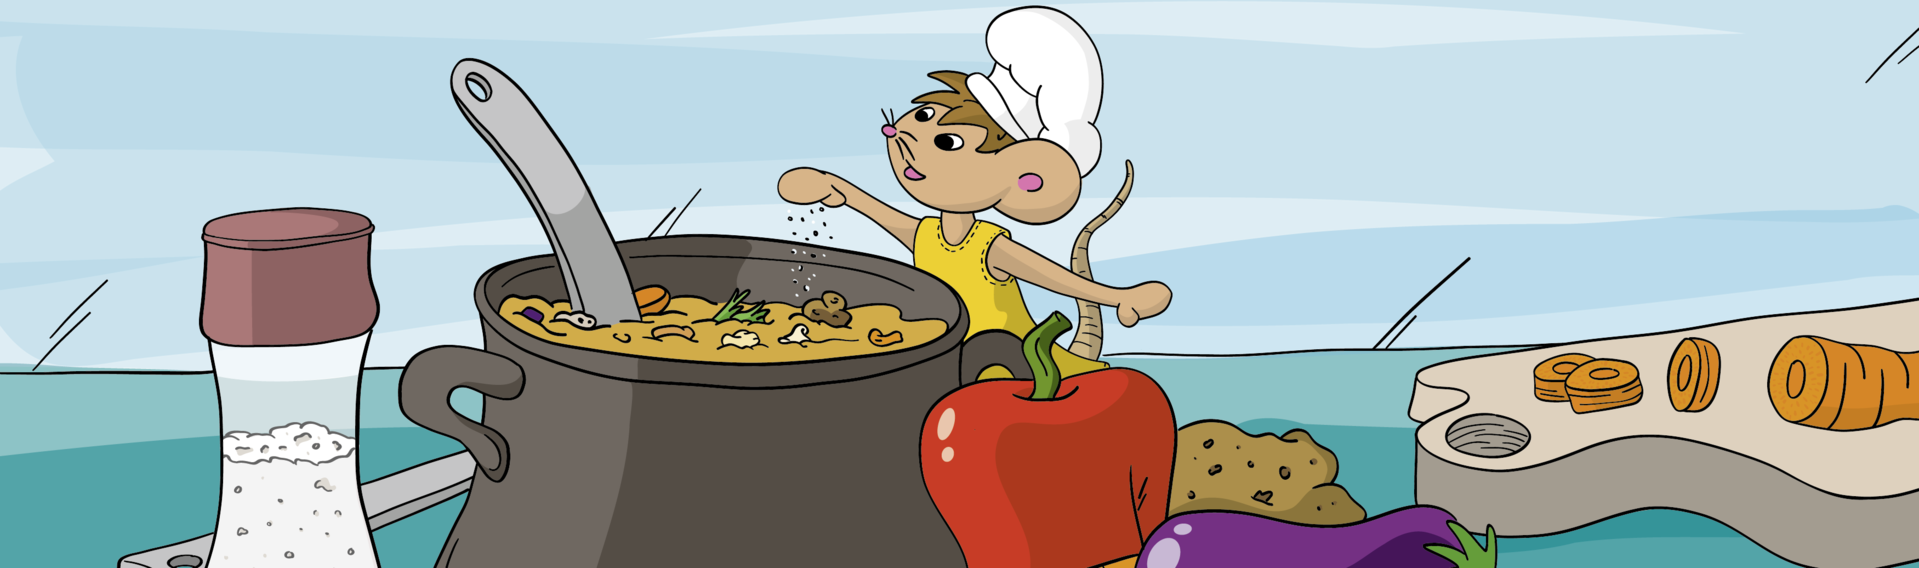 Zeichentrickgrafik mit Lisa der Maus beim Kochen